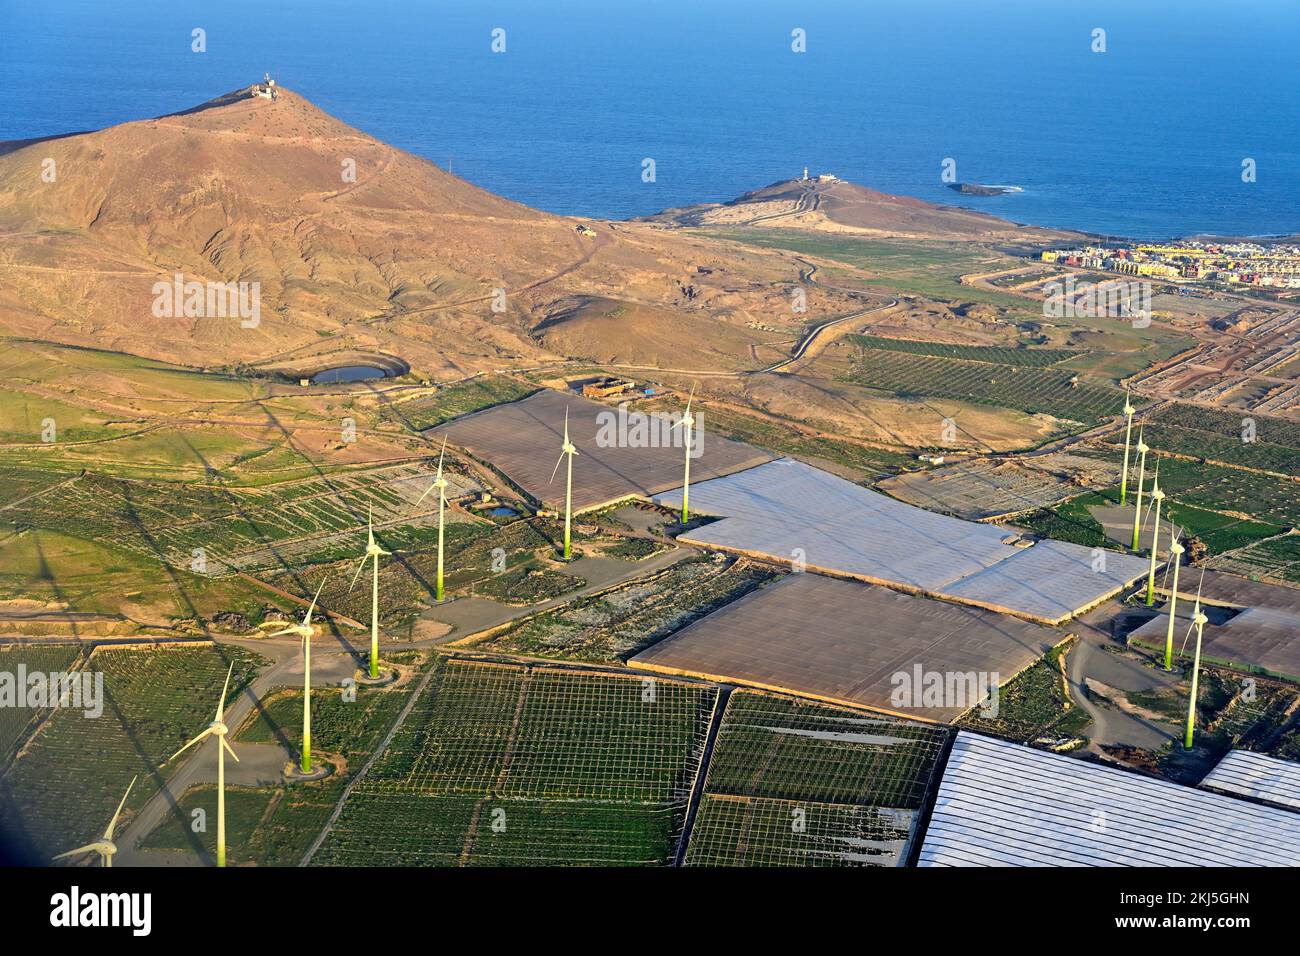 Veduta aerea di Arinaga sulla costa atlantica, Las Palmas, Gran Canaria, Spagna, oceano Atlantico. Con mulini a vento, campi agricoli e coperture. Foto Stock